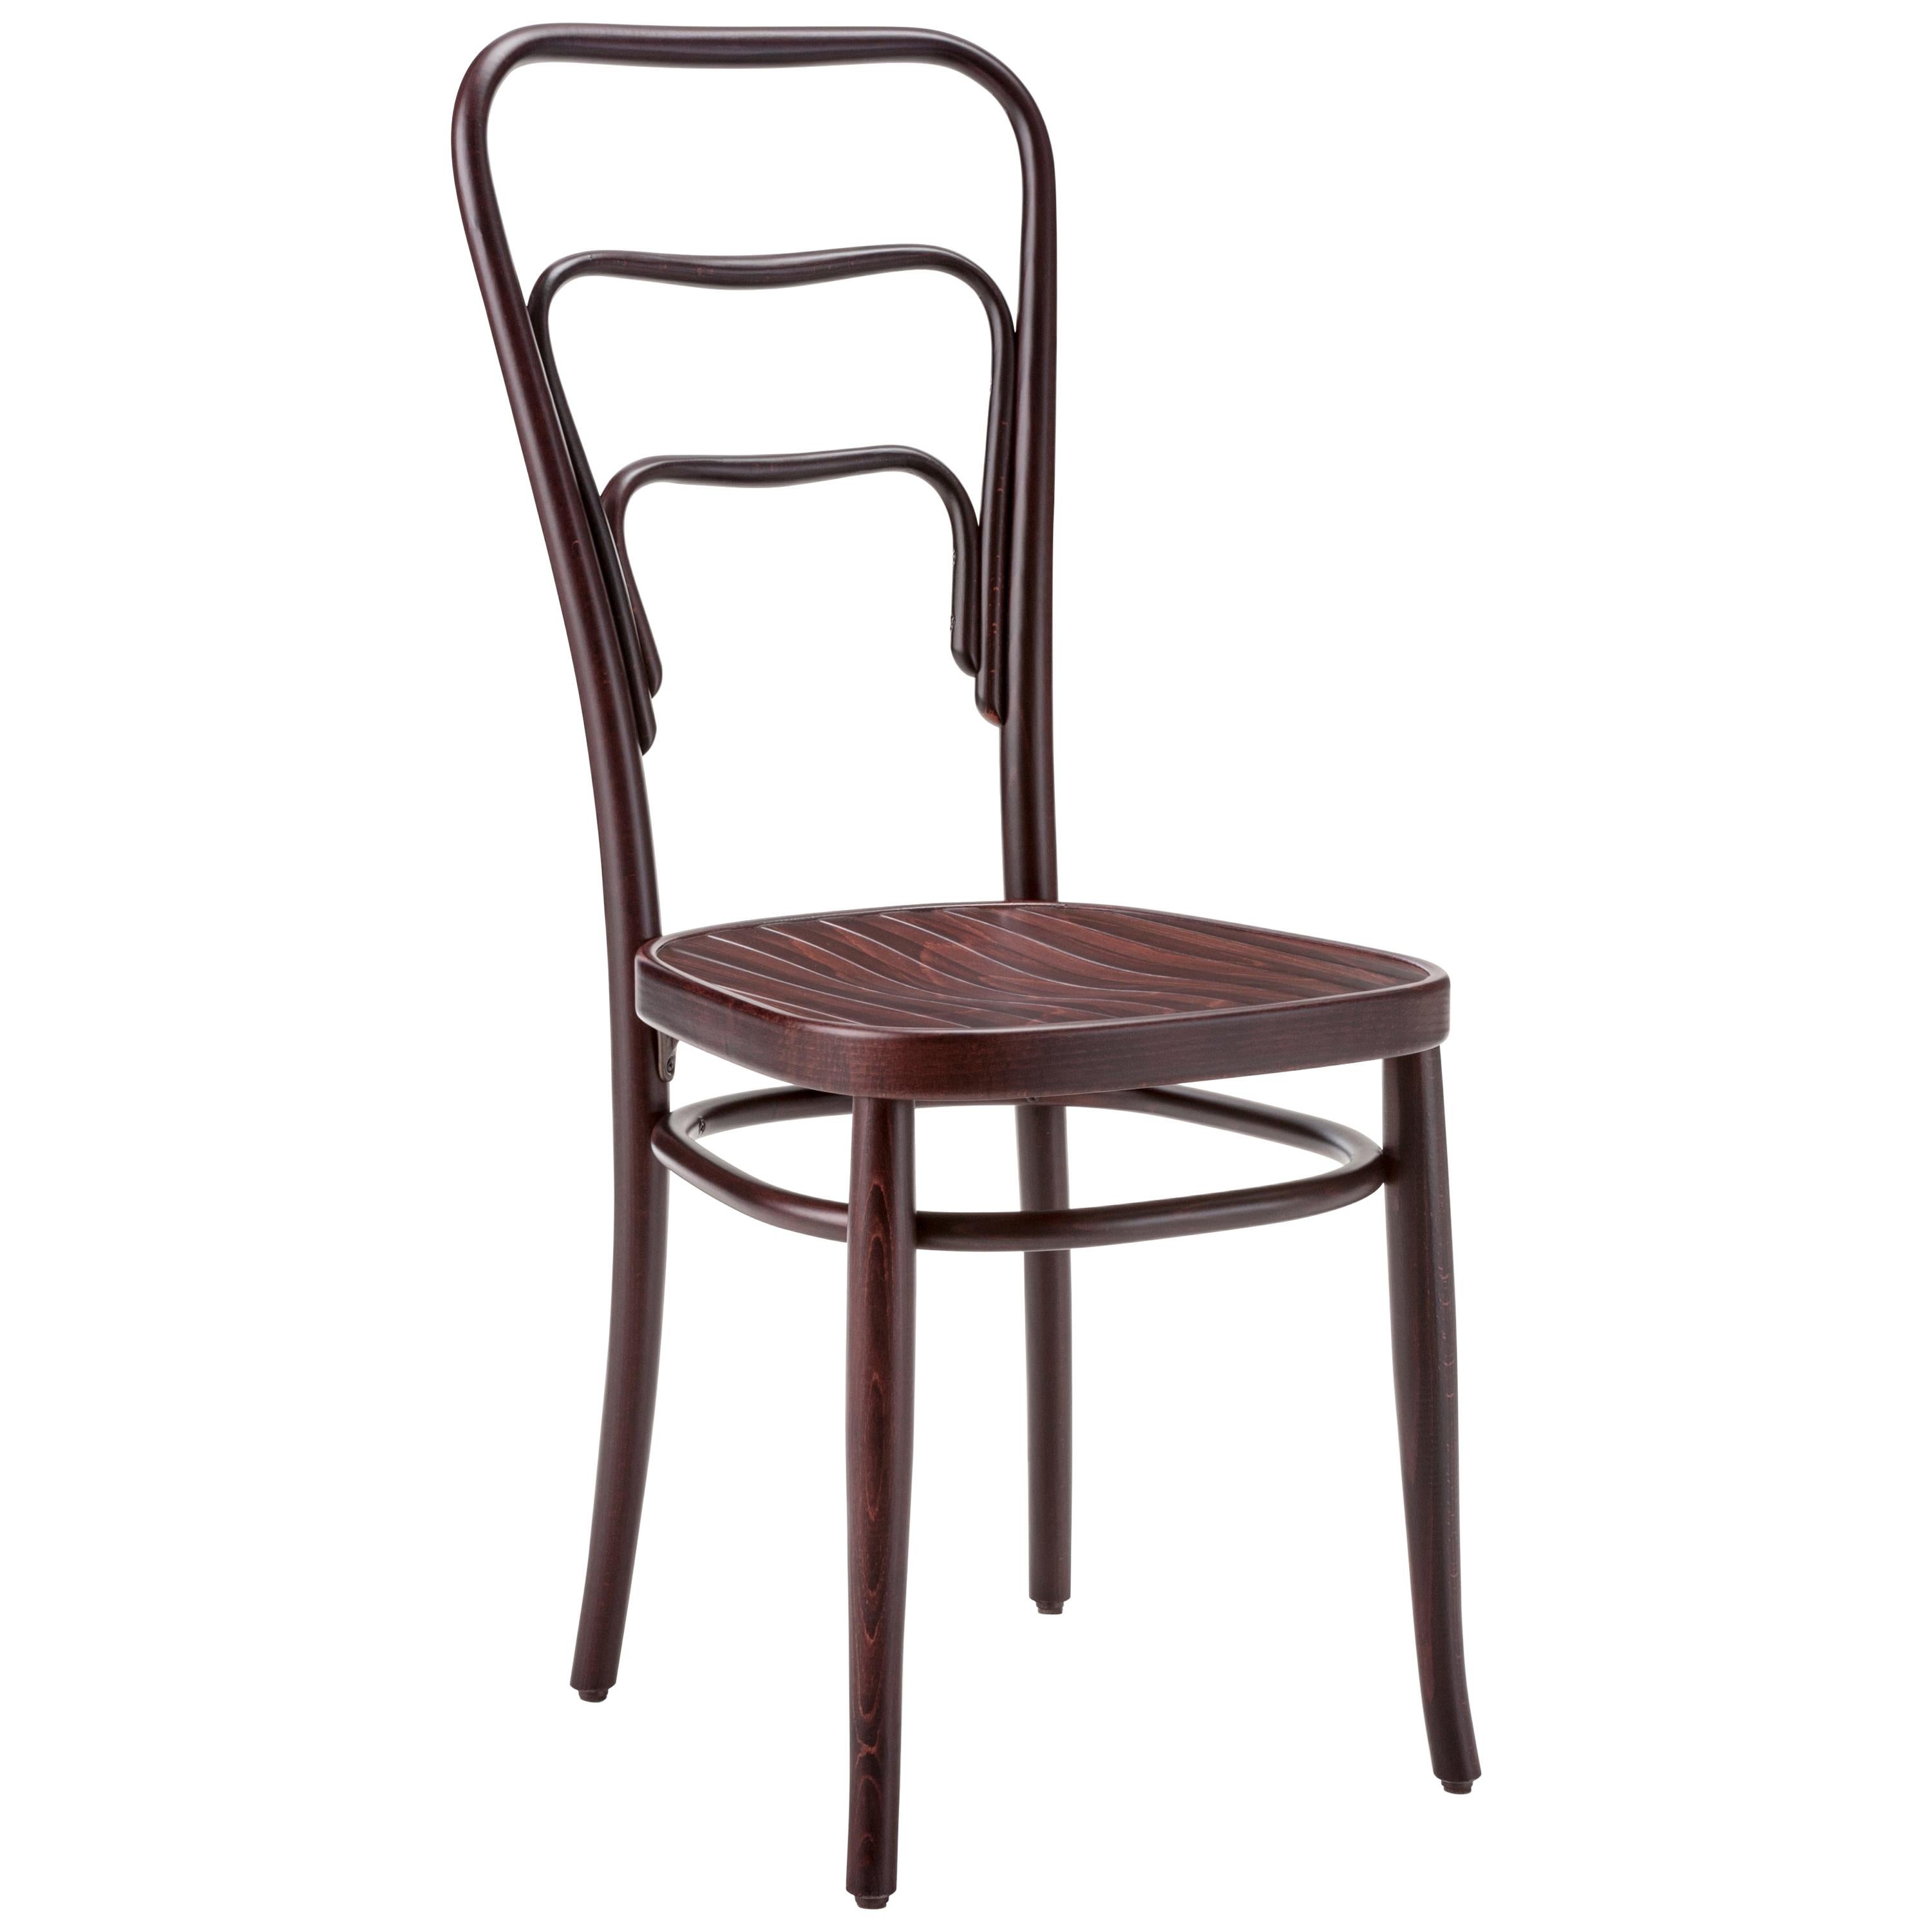 Gebrüder Thonet Vienna GmbH 144 Chair in Walnut with Strip Pattern Seat For Sale